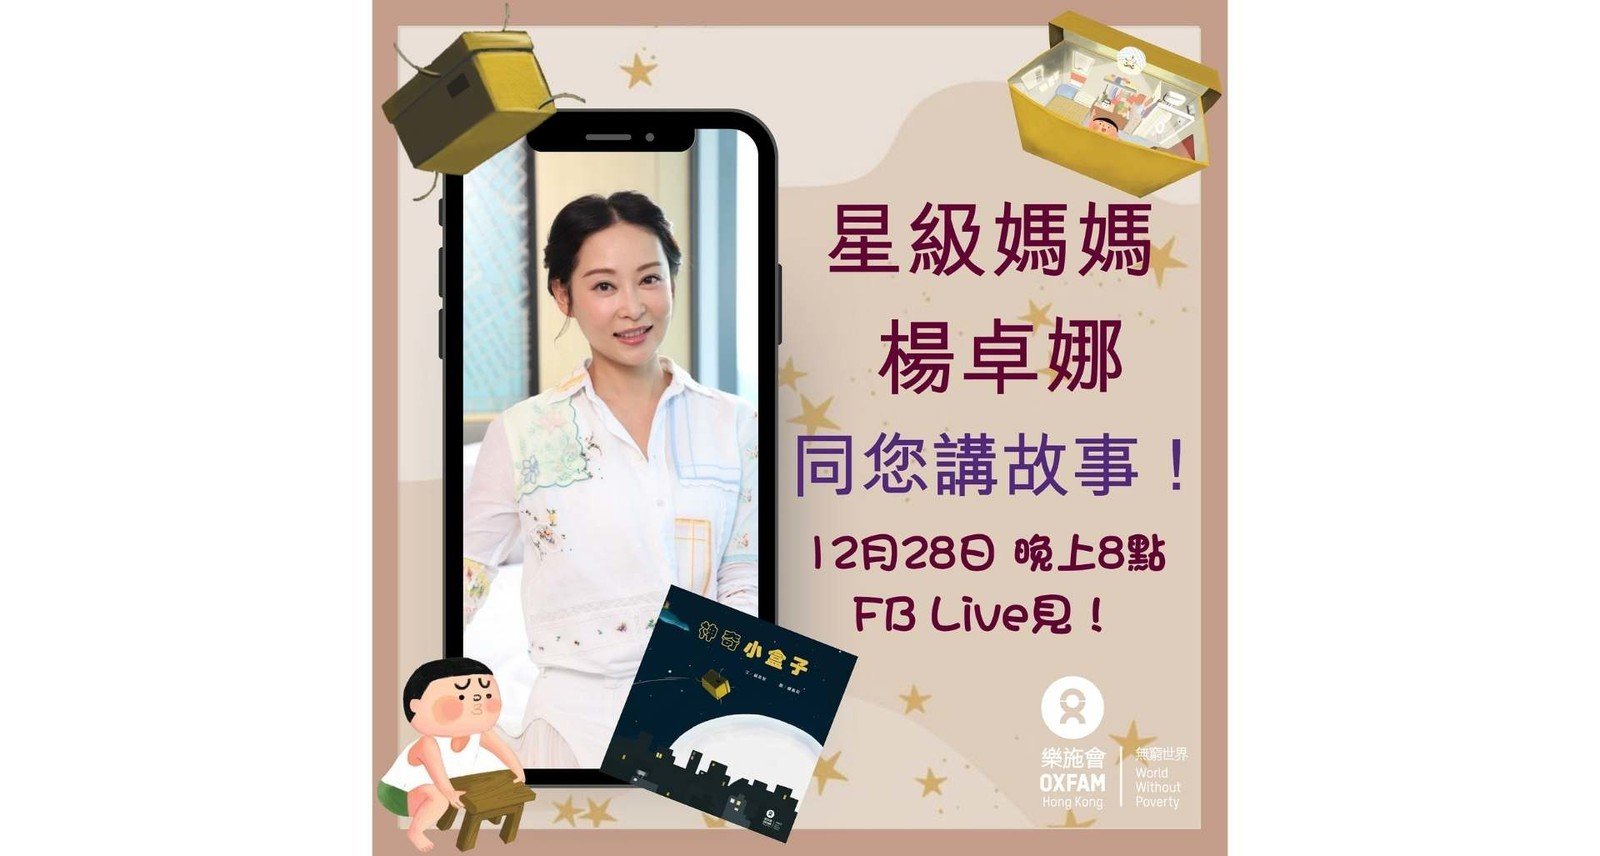 育有三女儿的星级妈妈杨卓娜，将会在Facebook Live上为所有小朋友和家长共读乐施会绘本《神奇小盒子》。